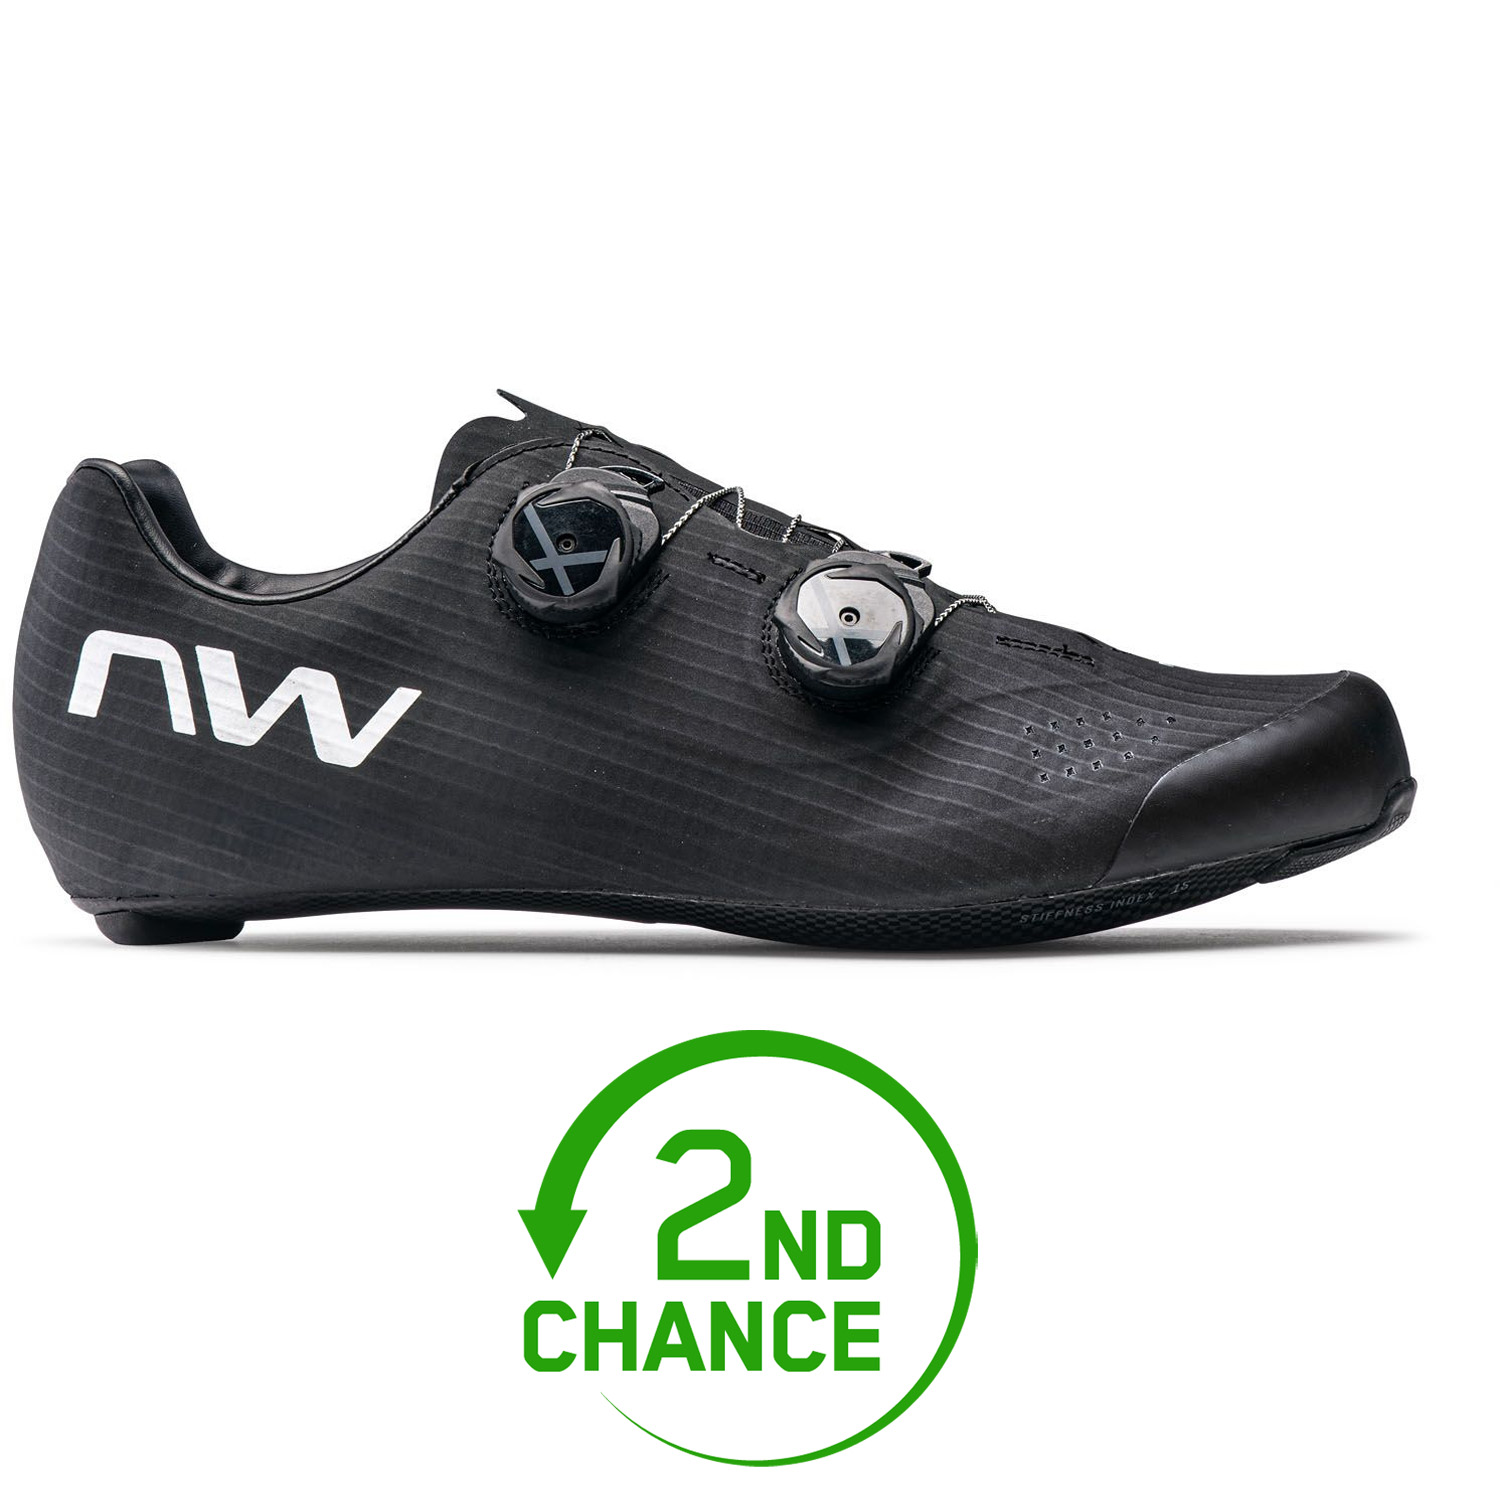 Produktbild von Northwave Extreme Pro 3 Rennradschuhe Herren - schwarz /weiß 11 - B-Ware